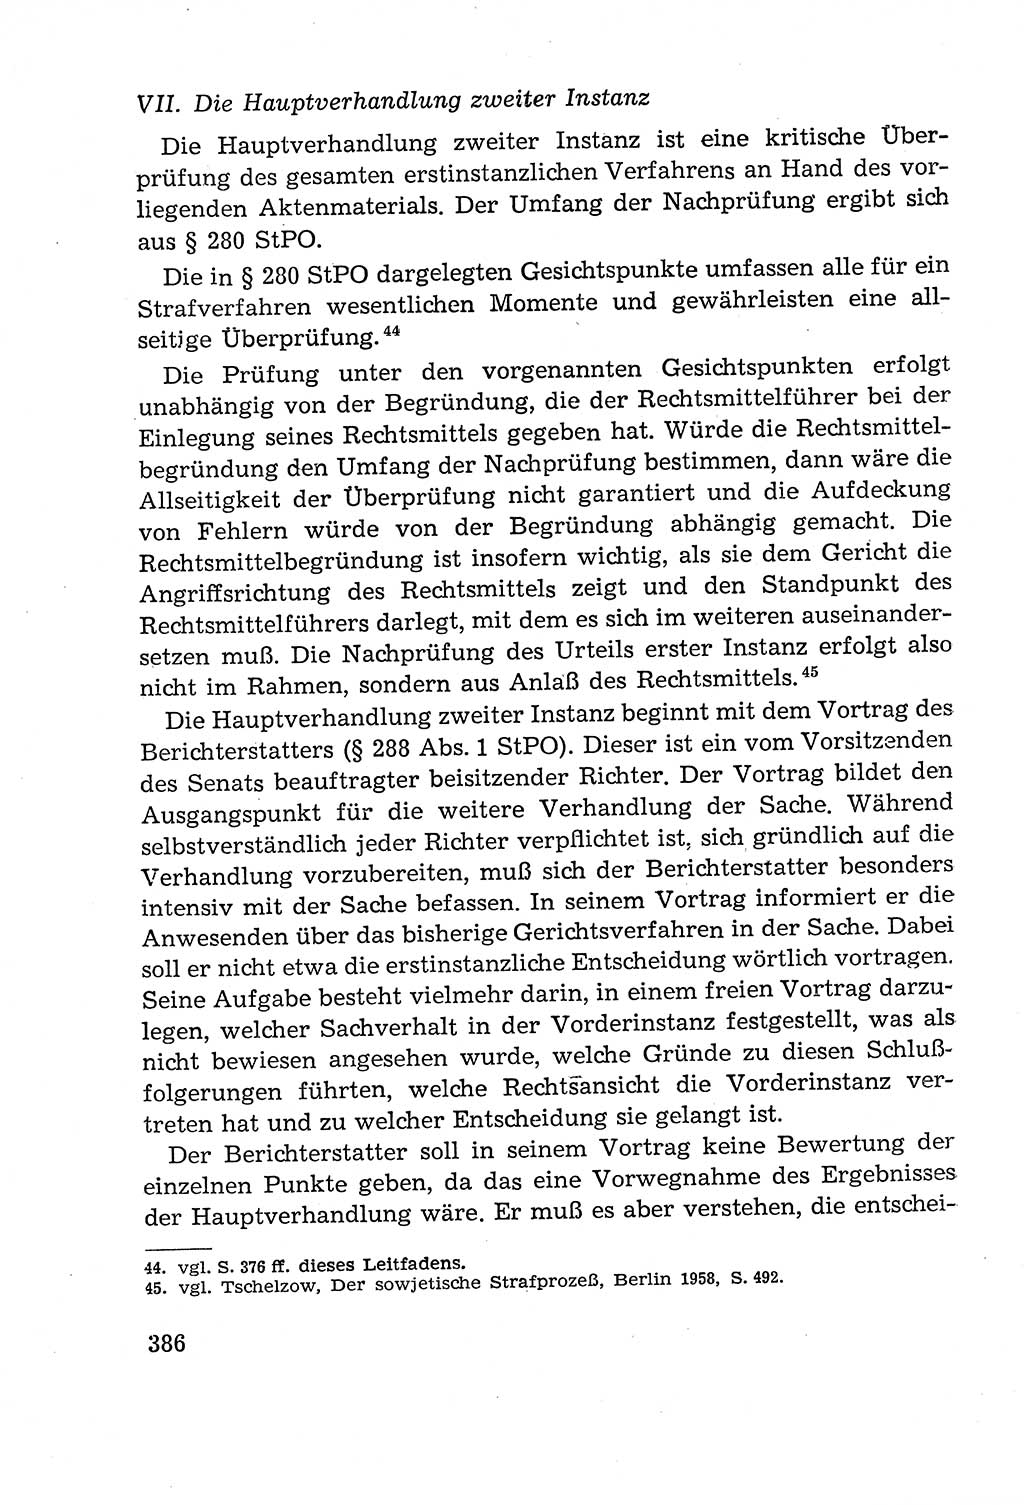 Leitfaden des Strafprozeßrechts der Deutschen Demokratischen Republik (DDR) 1959, Seite 386 (LF StPR DDR 1959, S. 386)